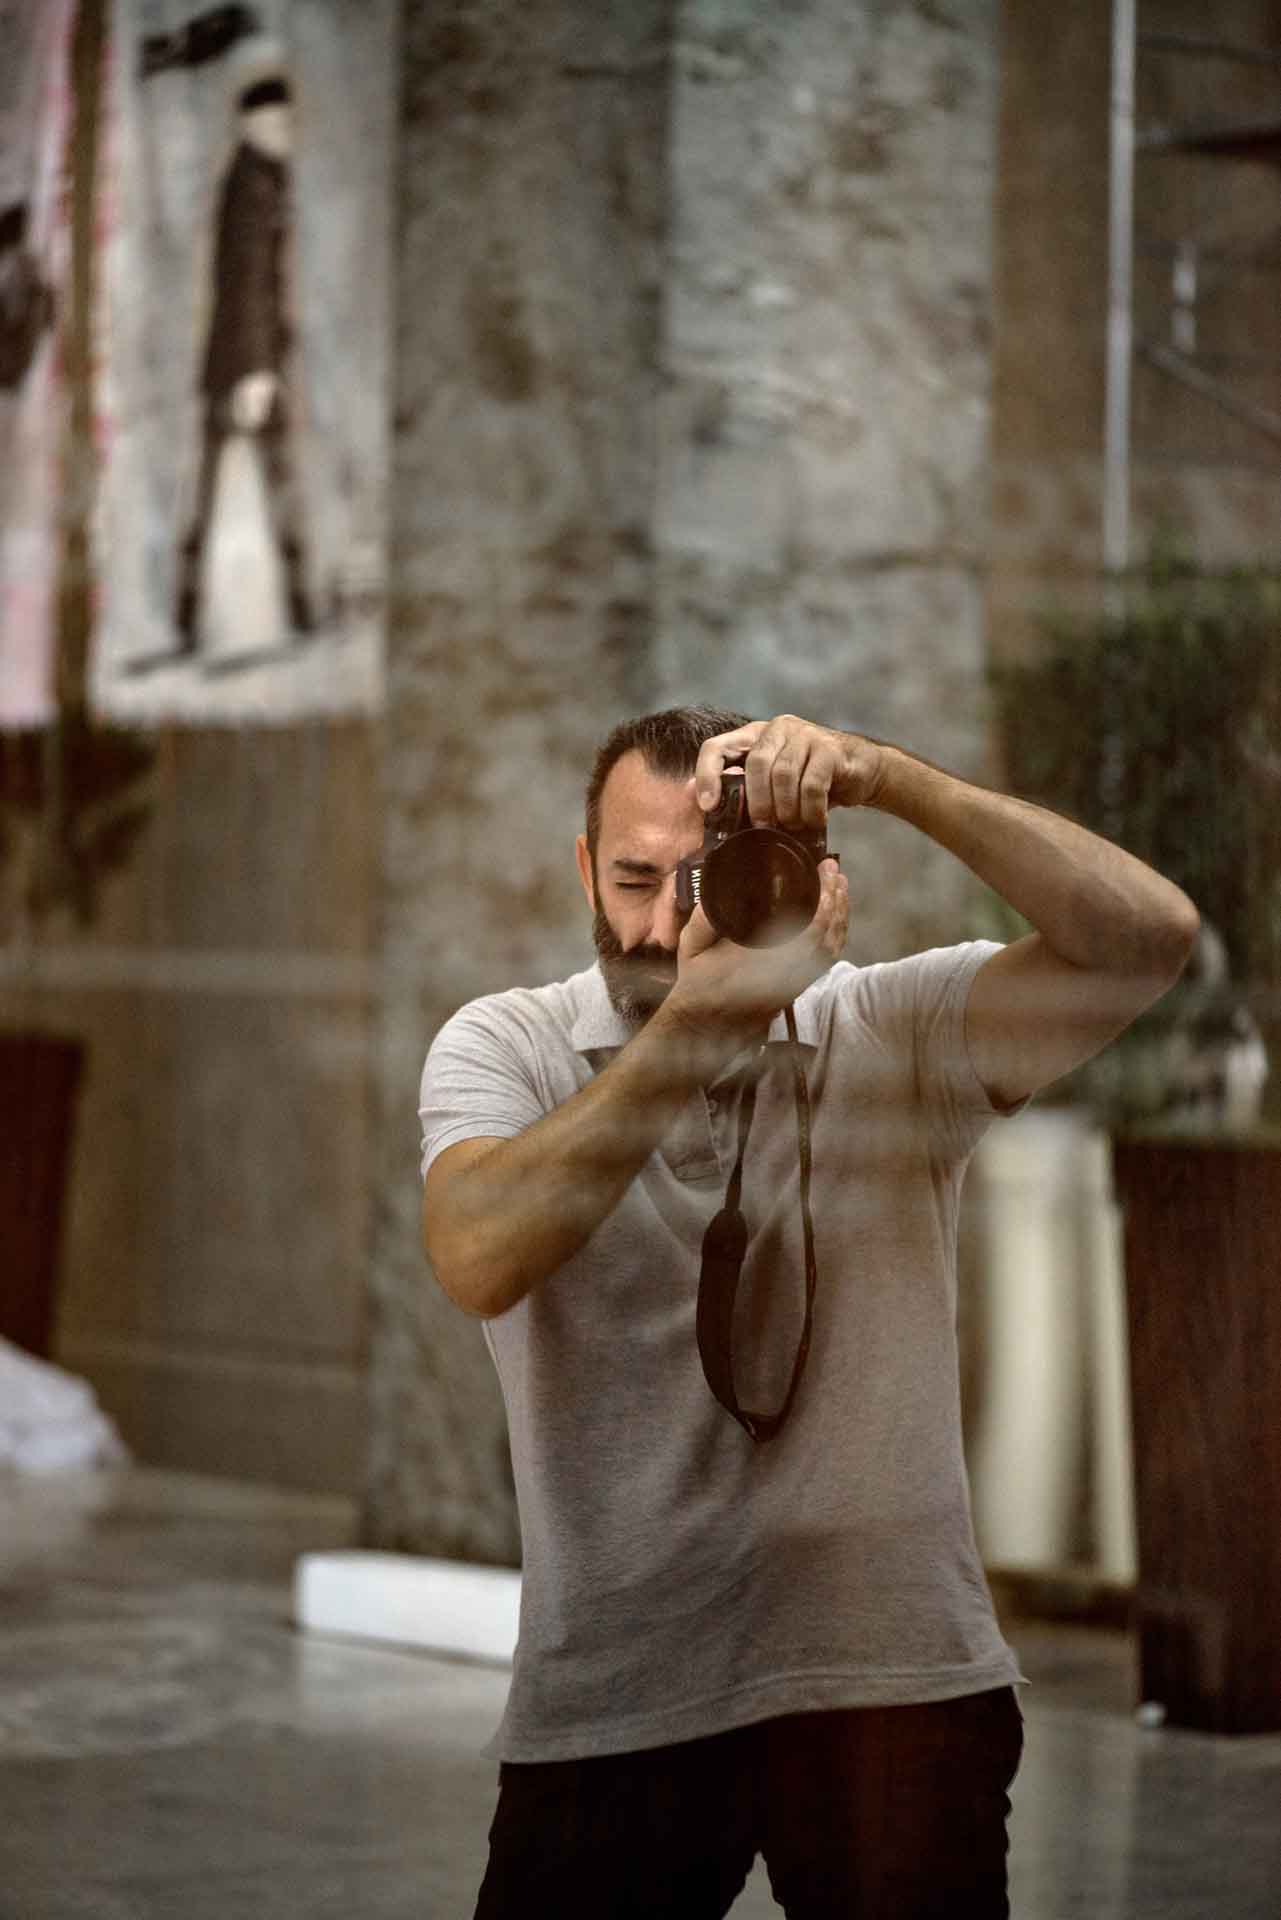 Chiara Rapaccini Mario Monicelli 72 Mostra Internazionale d’ Arte Cinematografica – La Biennale di venezia 2015 00009